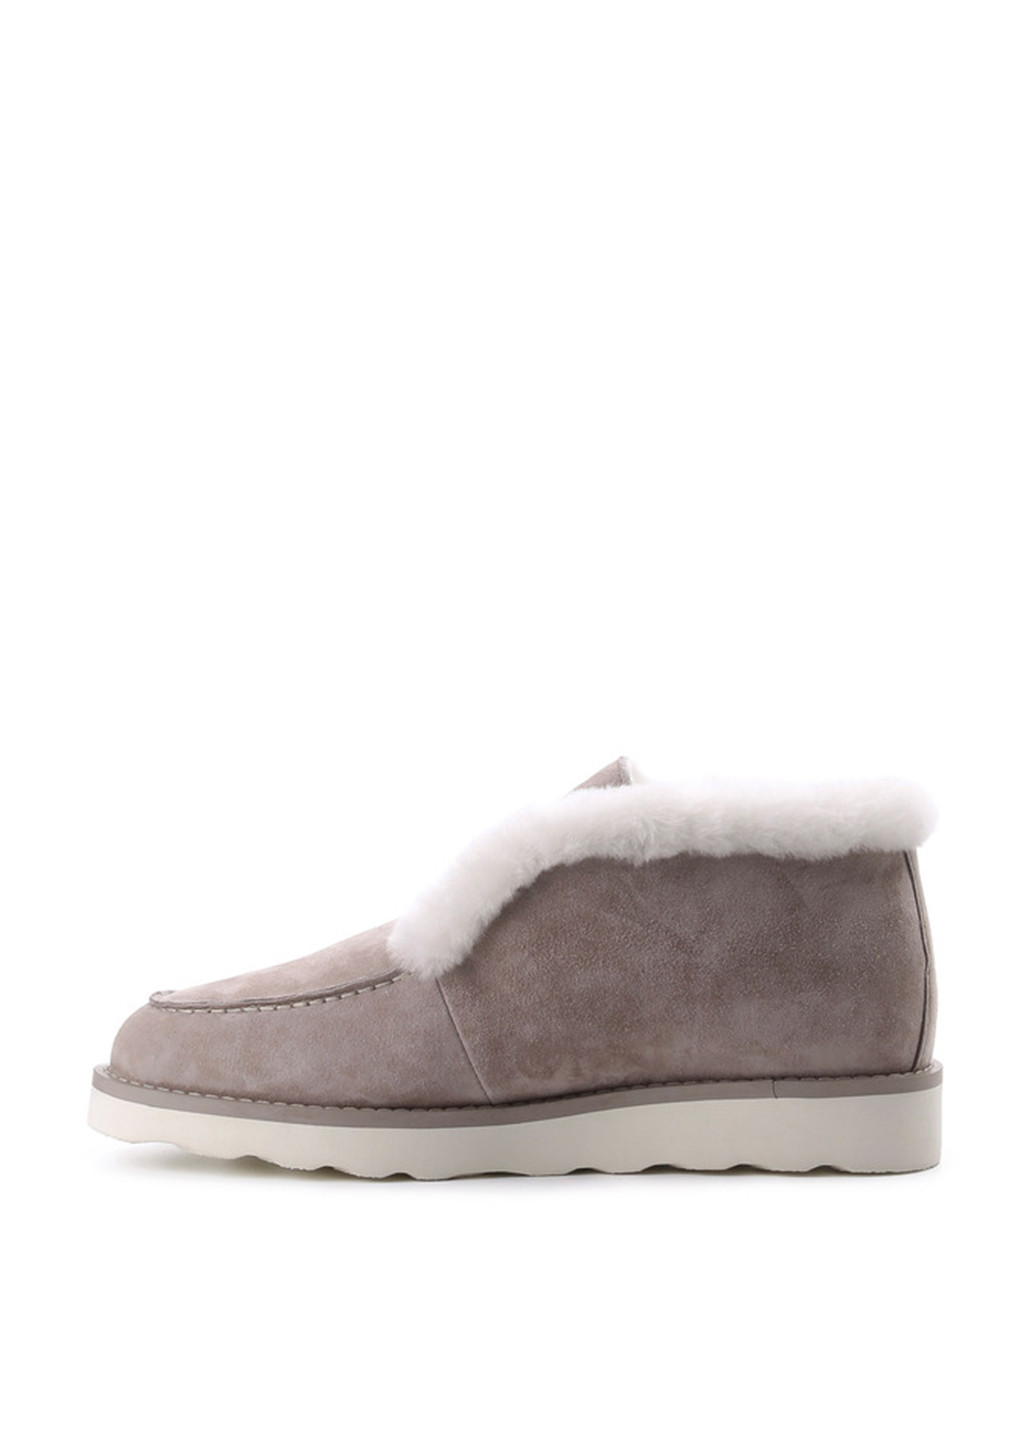 Зимние ботинки Le'BERDES с мехом, с белой подошвой из натуральной замши